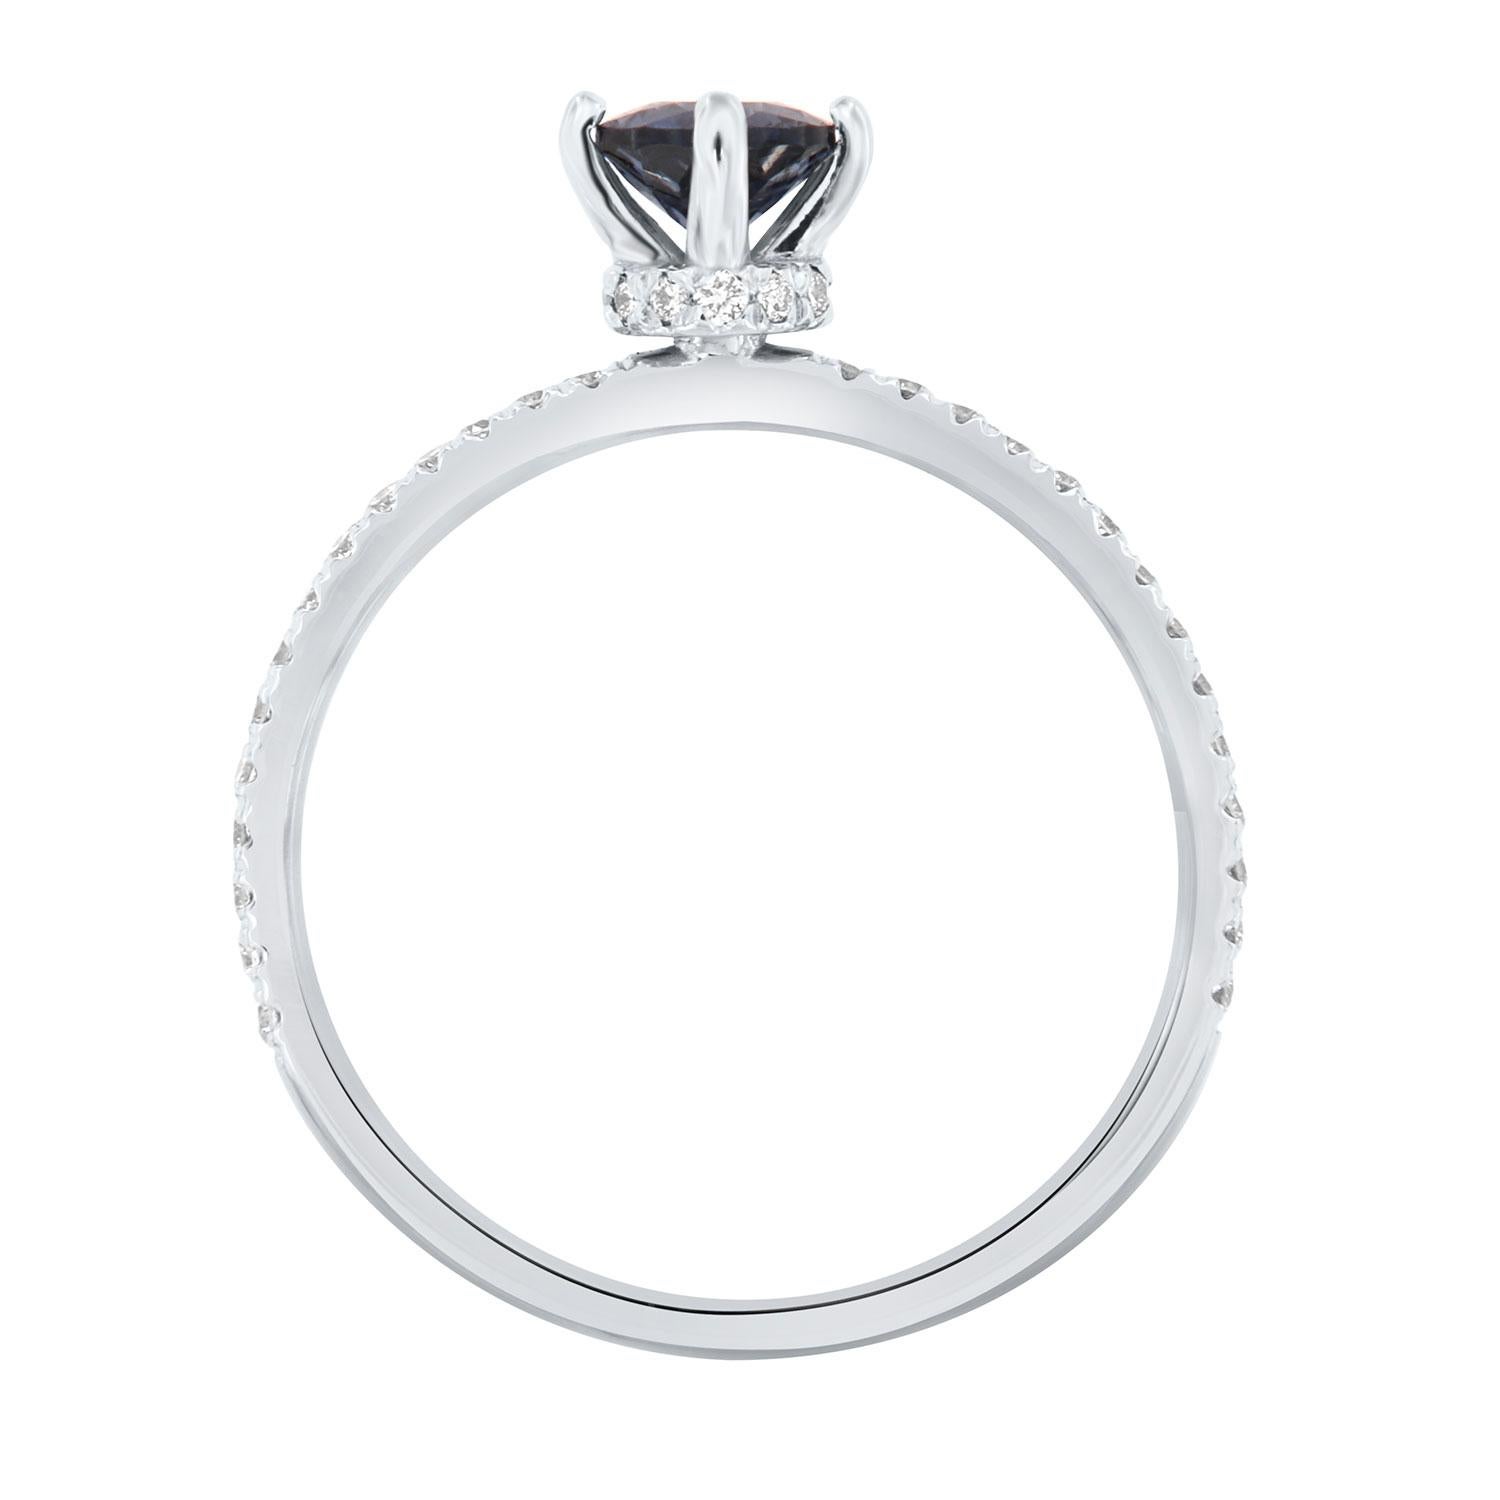 hidden sapphire engagement ring